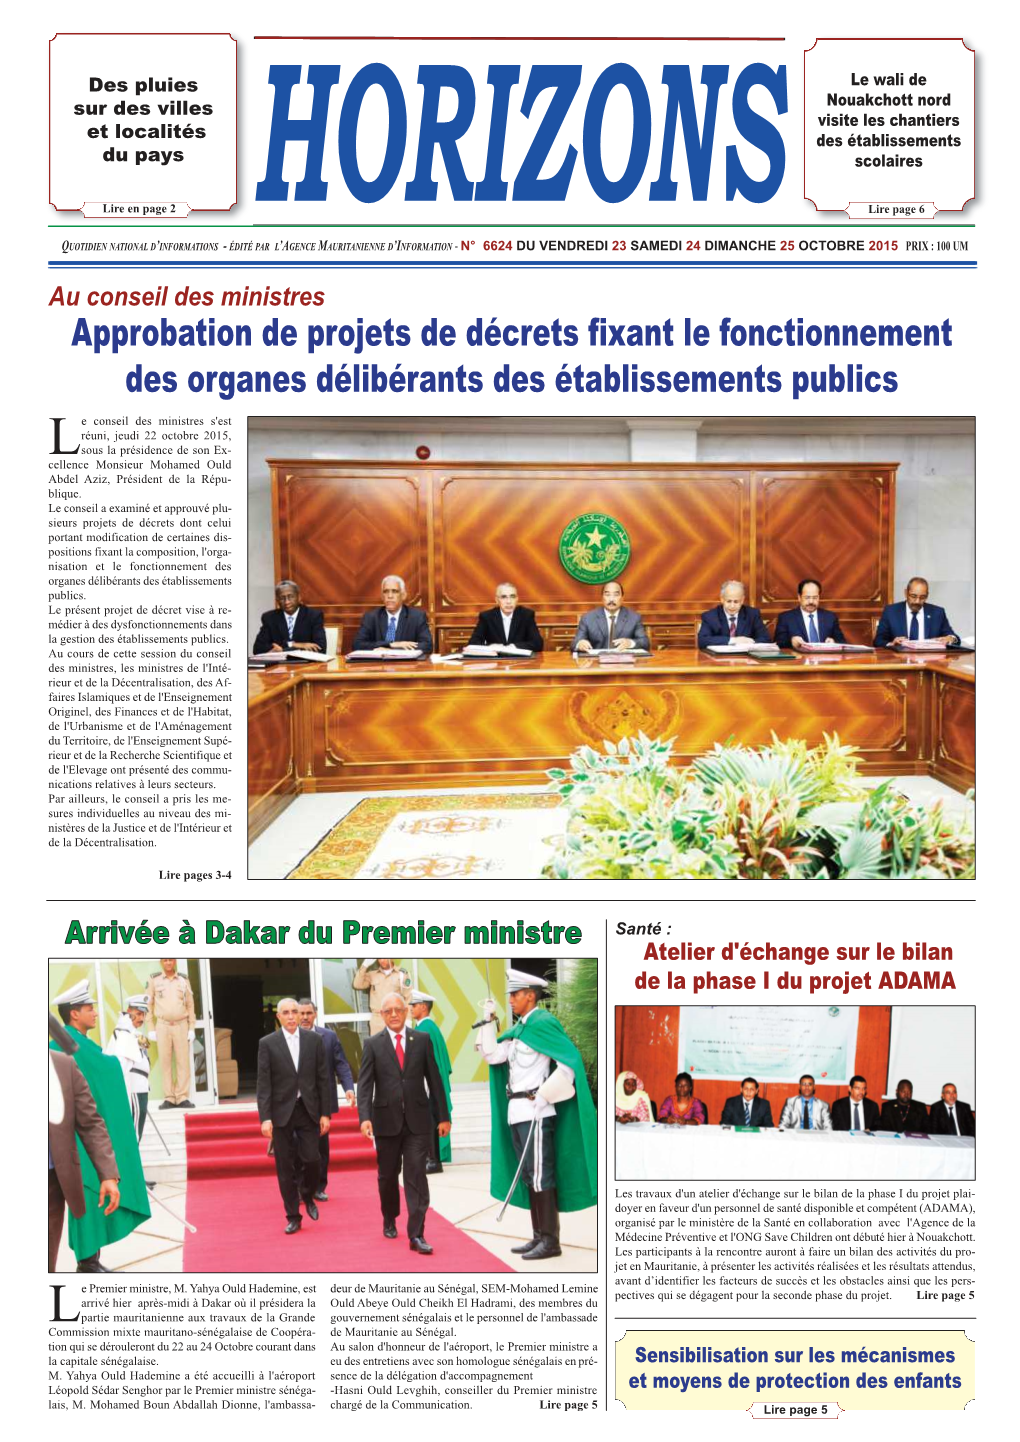 Arrivée À Dakar Du Premier Ministre Santé : Atelier D'échange Sur Le Bilan De La Phase I Du Projet ADAMA